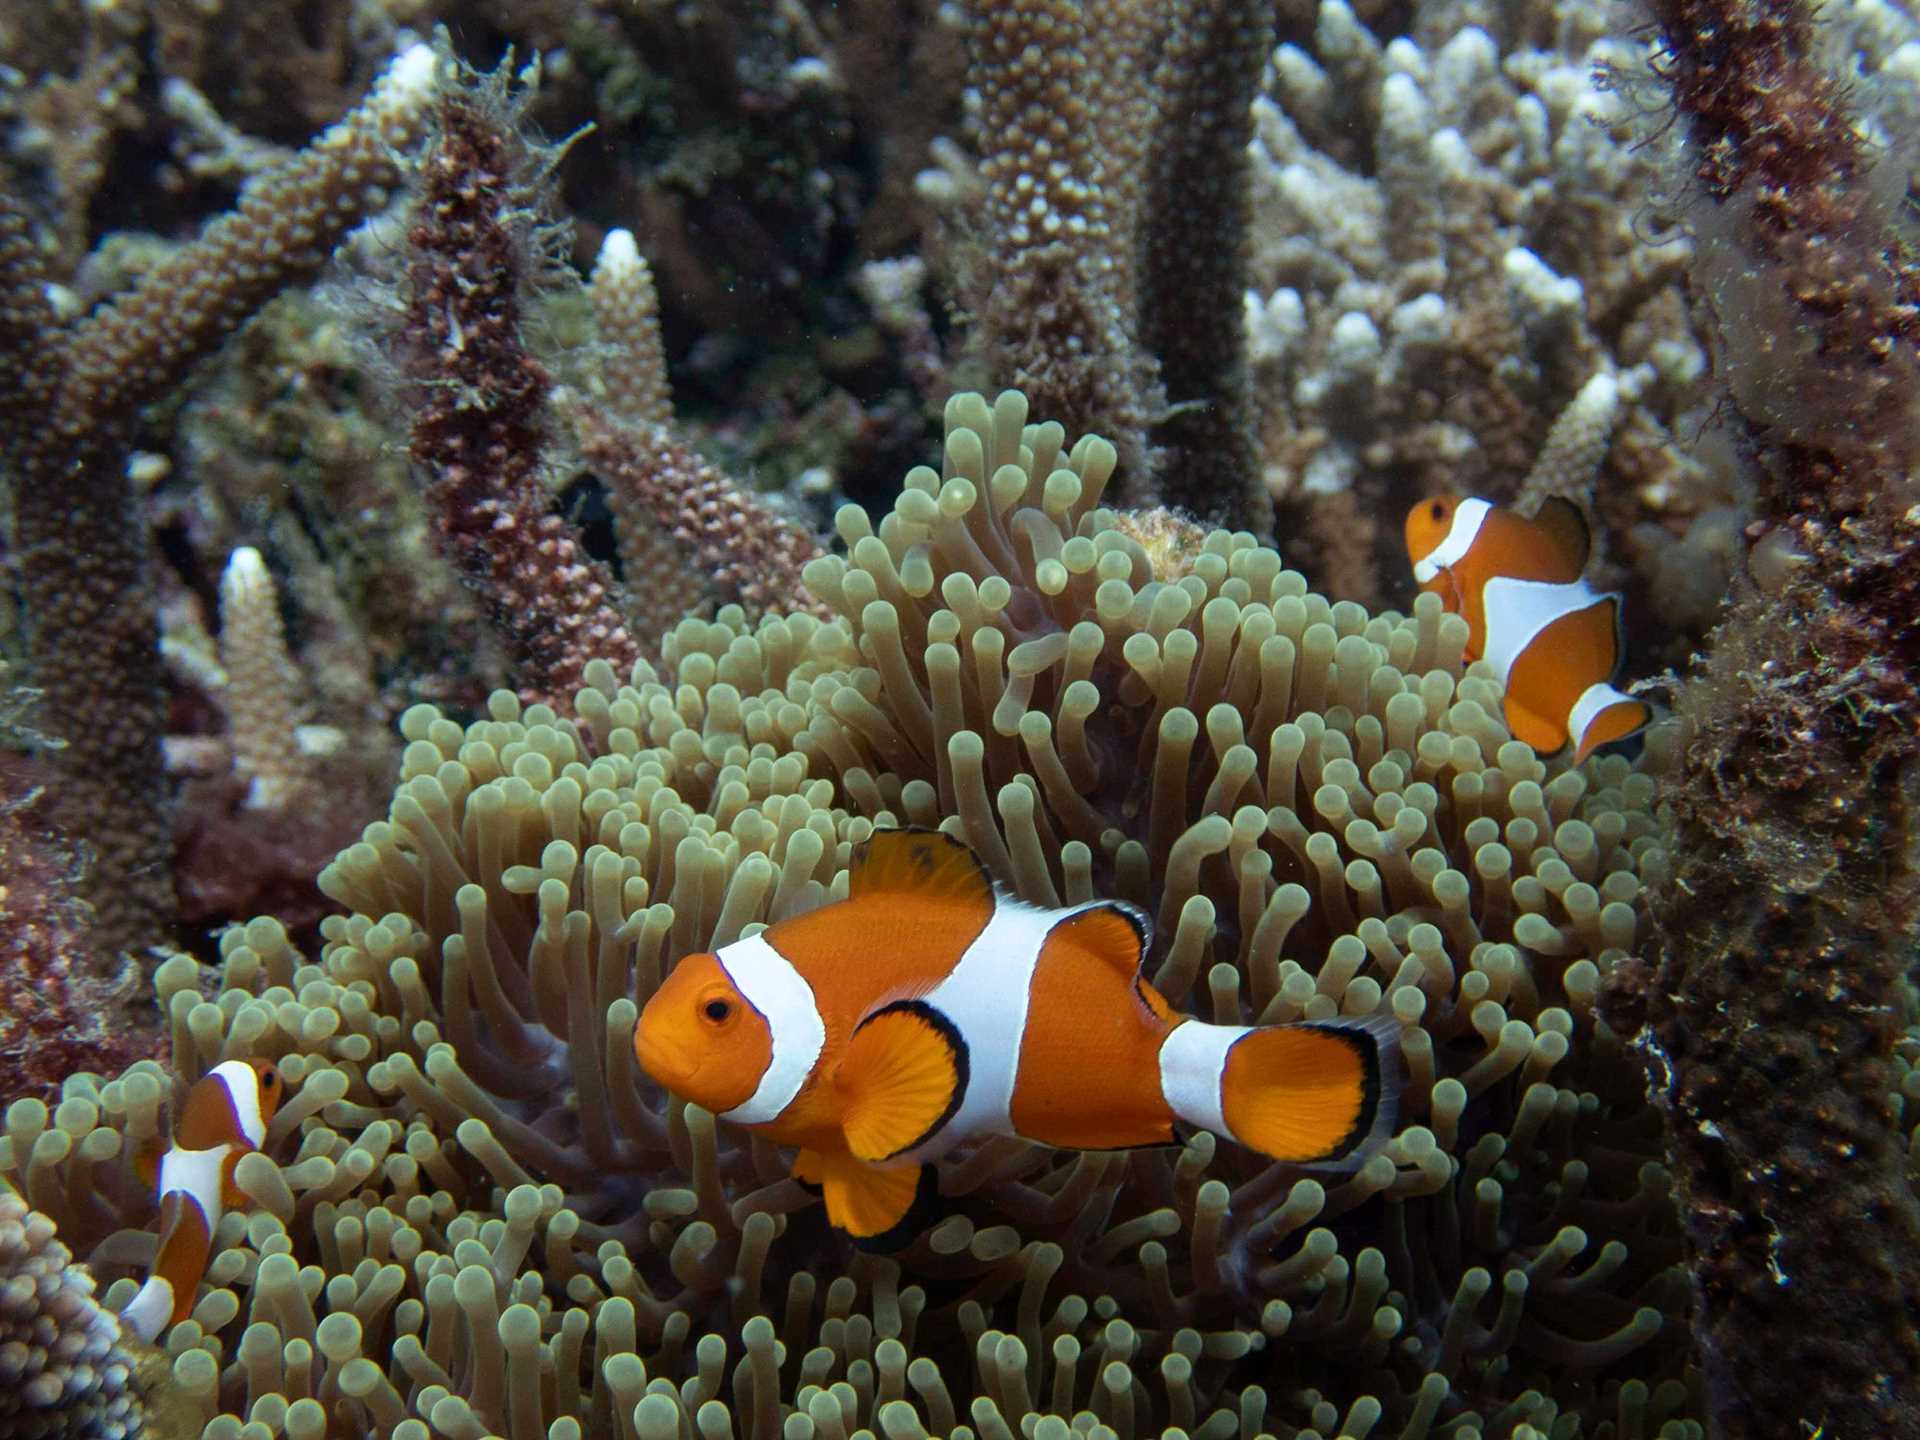 orange and white fish and yellow sea anemone